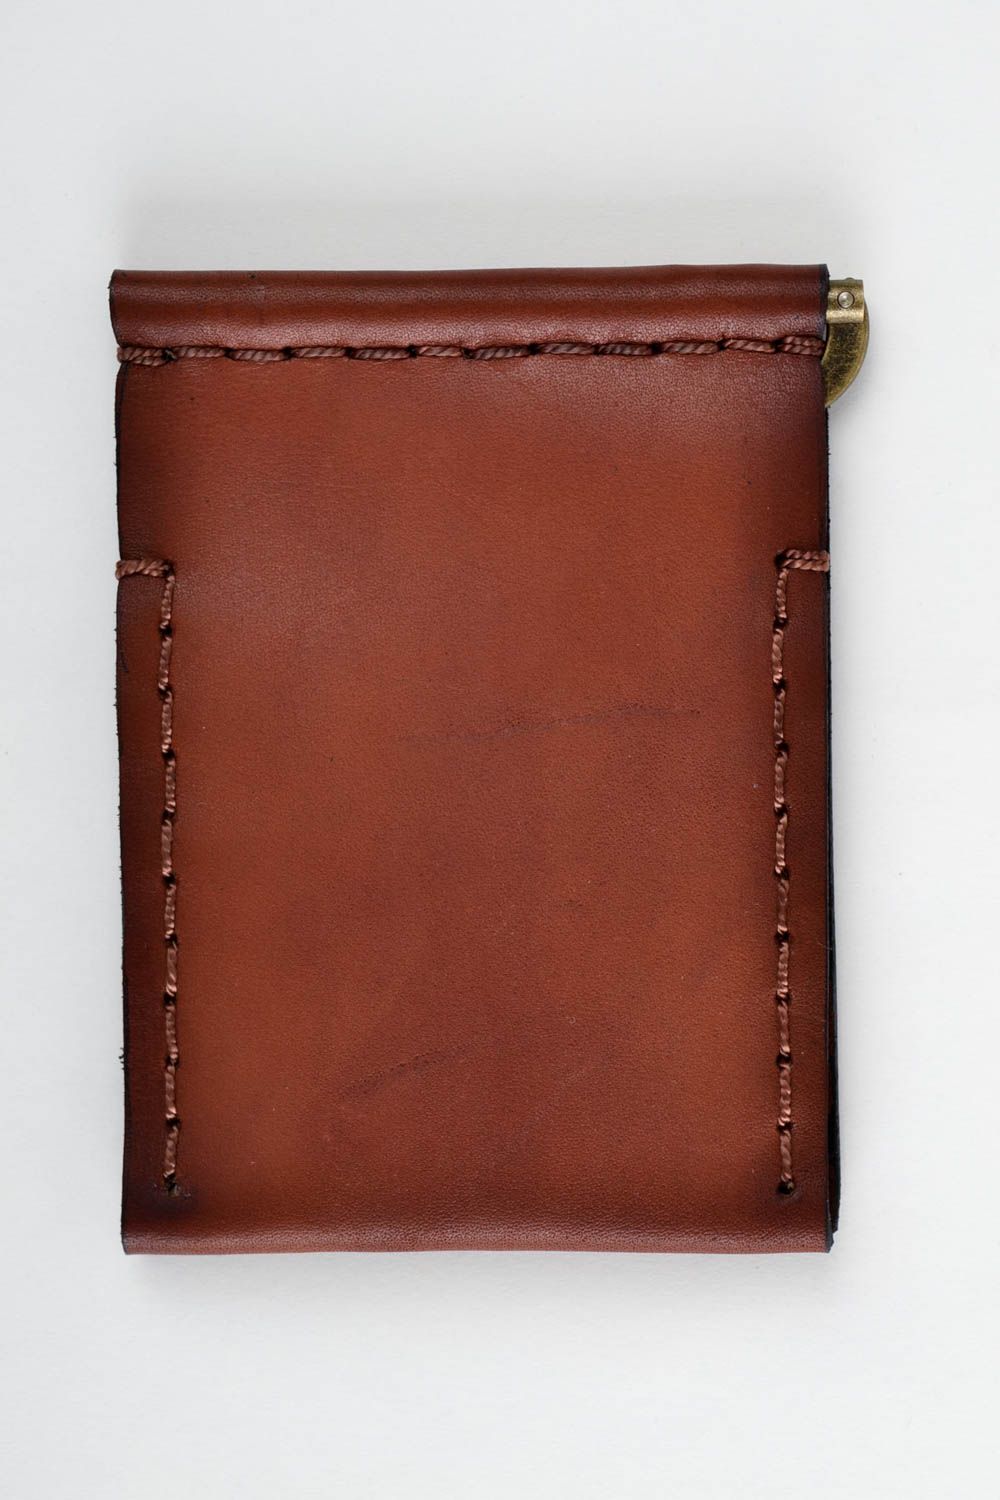 Мужское портмоне ручной работы кожаный кошелек аксессуар для мужчин стильный фото 5